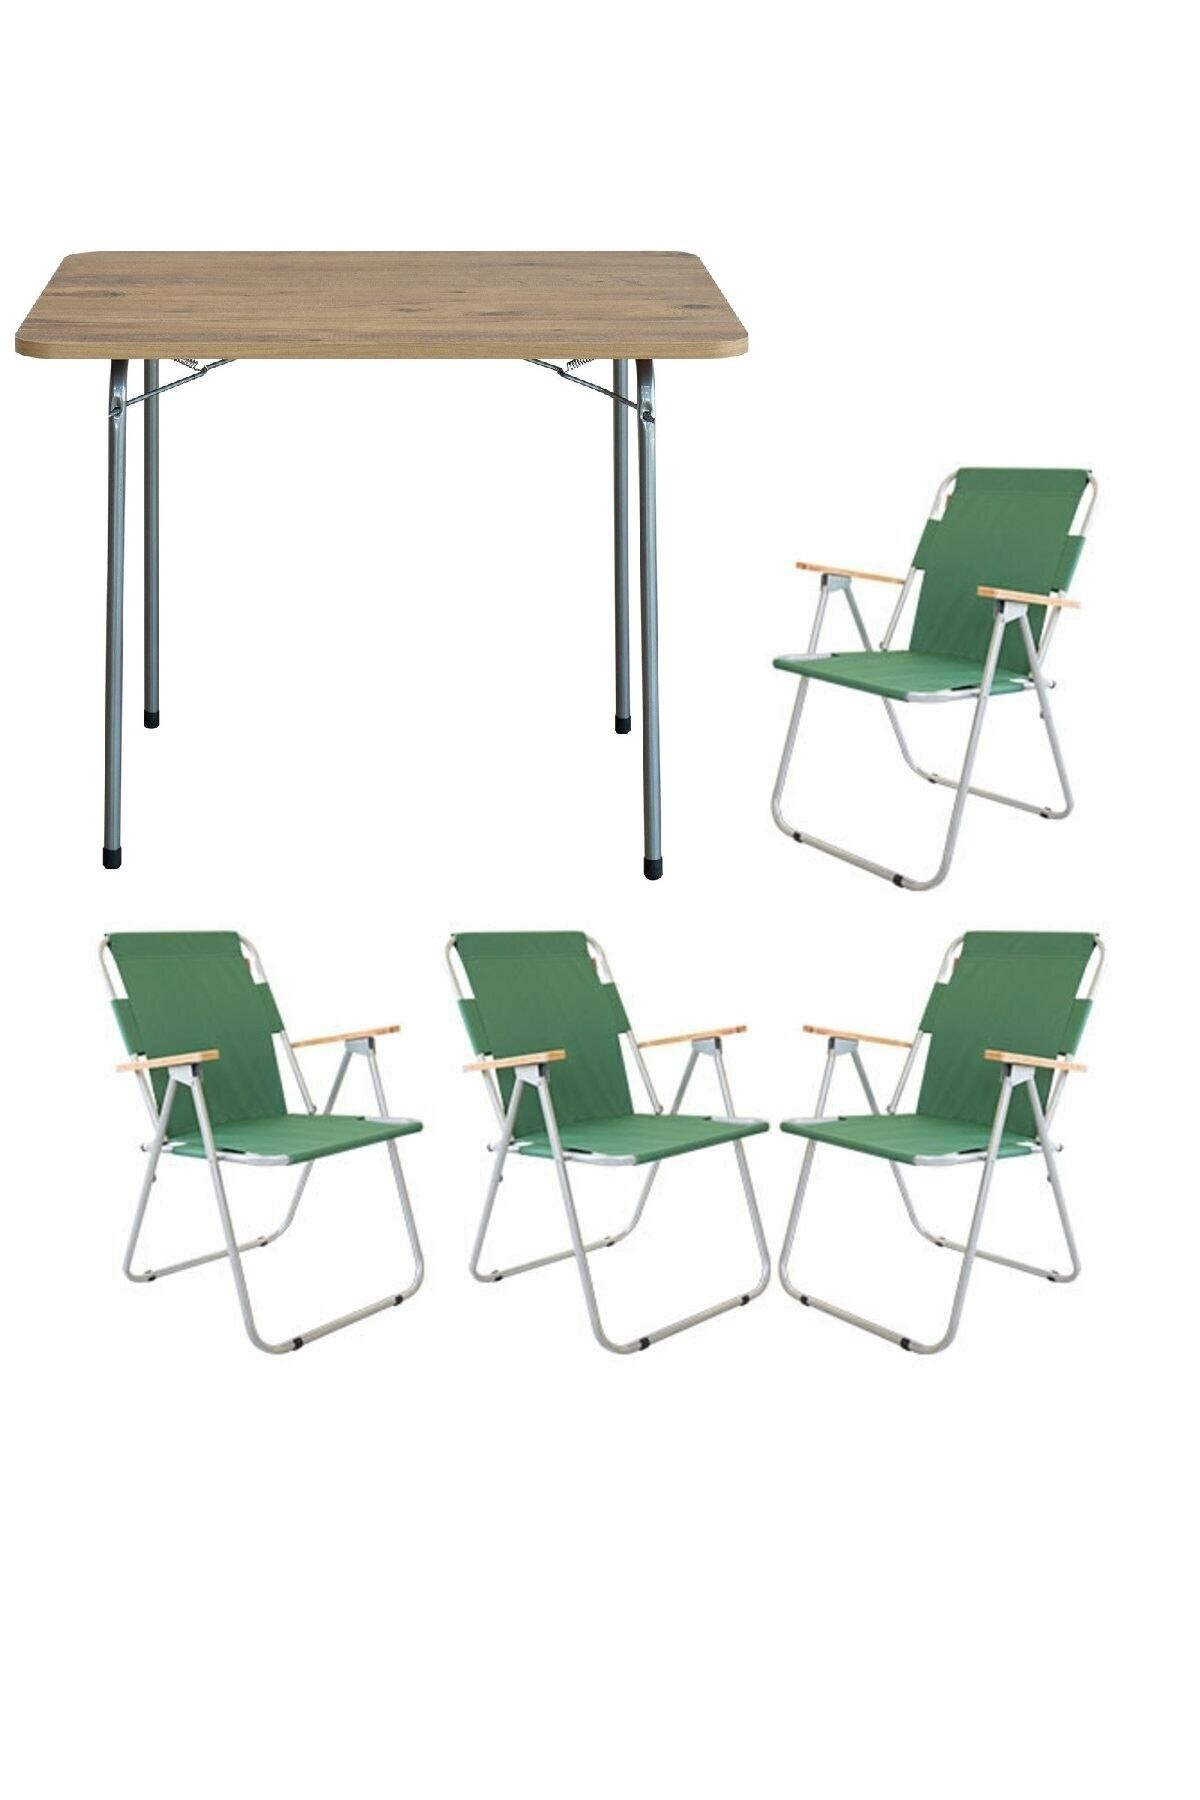 Bofigo 60x80 Çam Katlanır Masa + 4 Adet Katlanır Sandalye Kamp Seti Bahçe Balkon Takımı Yeşil